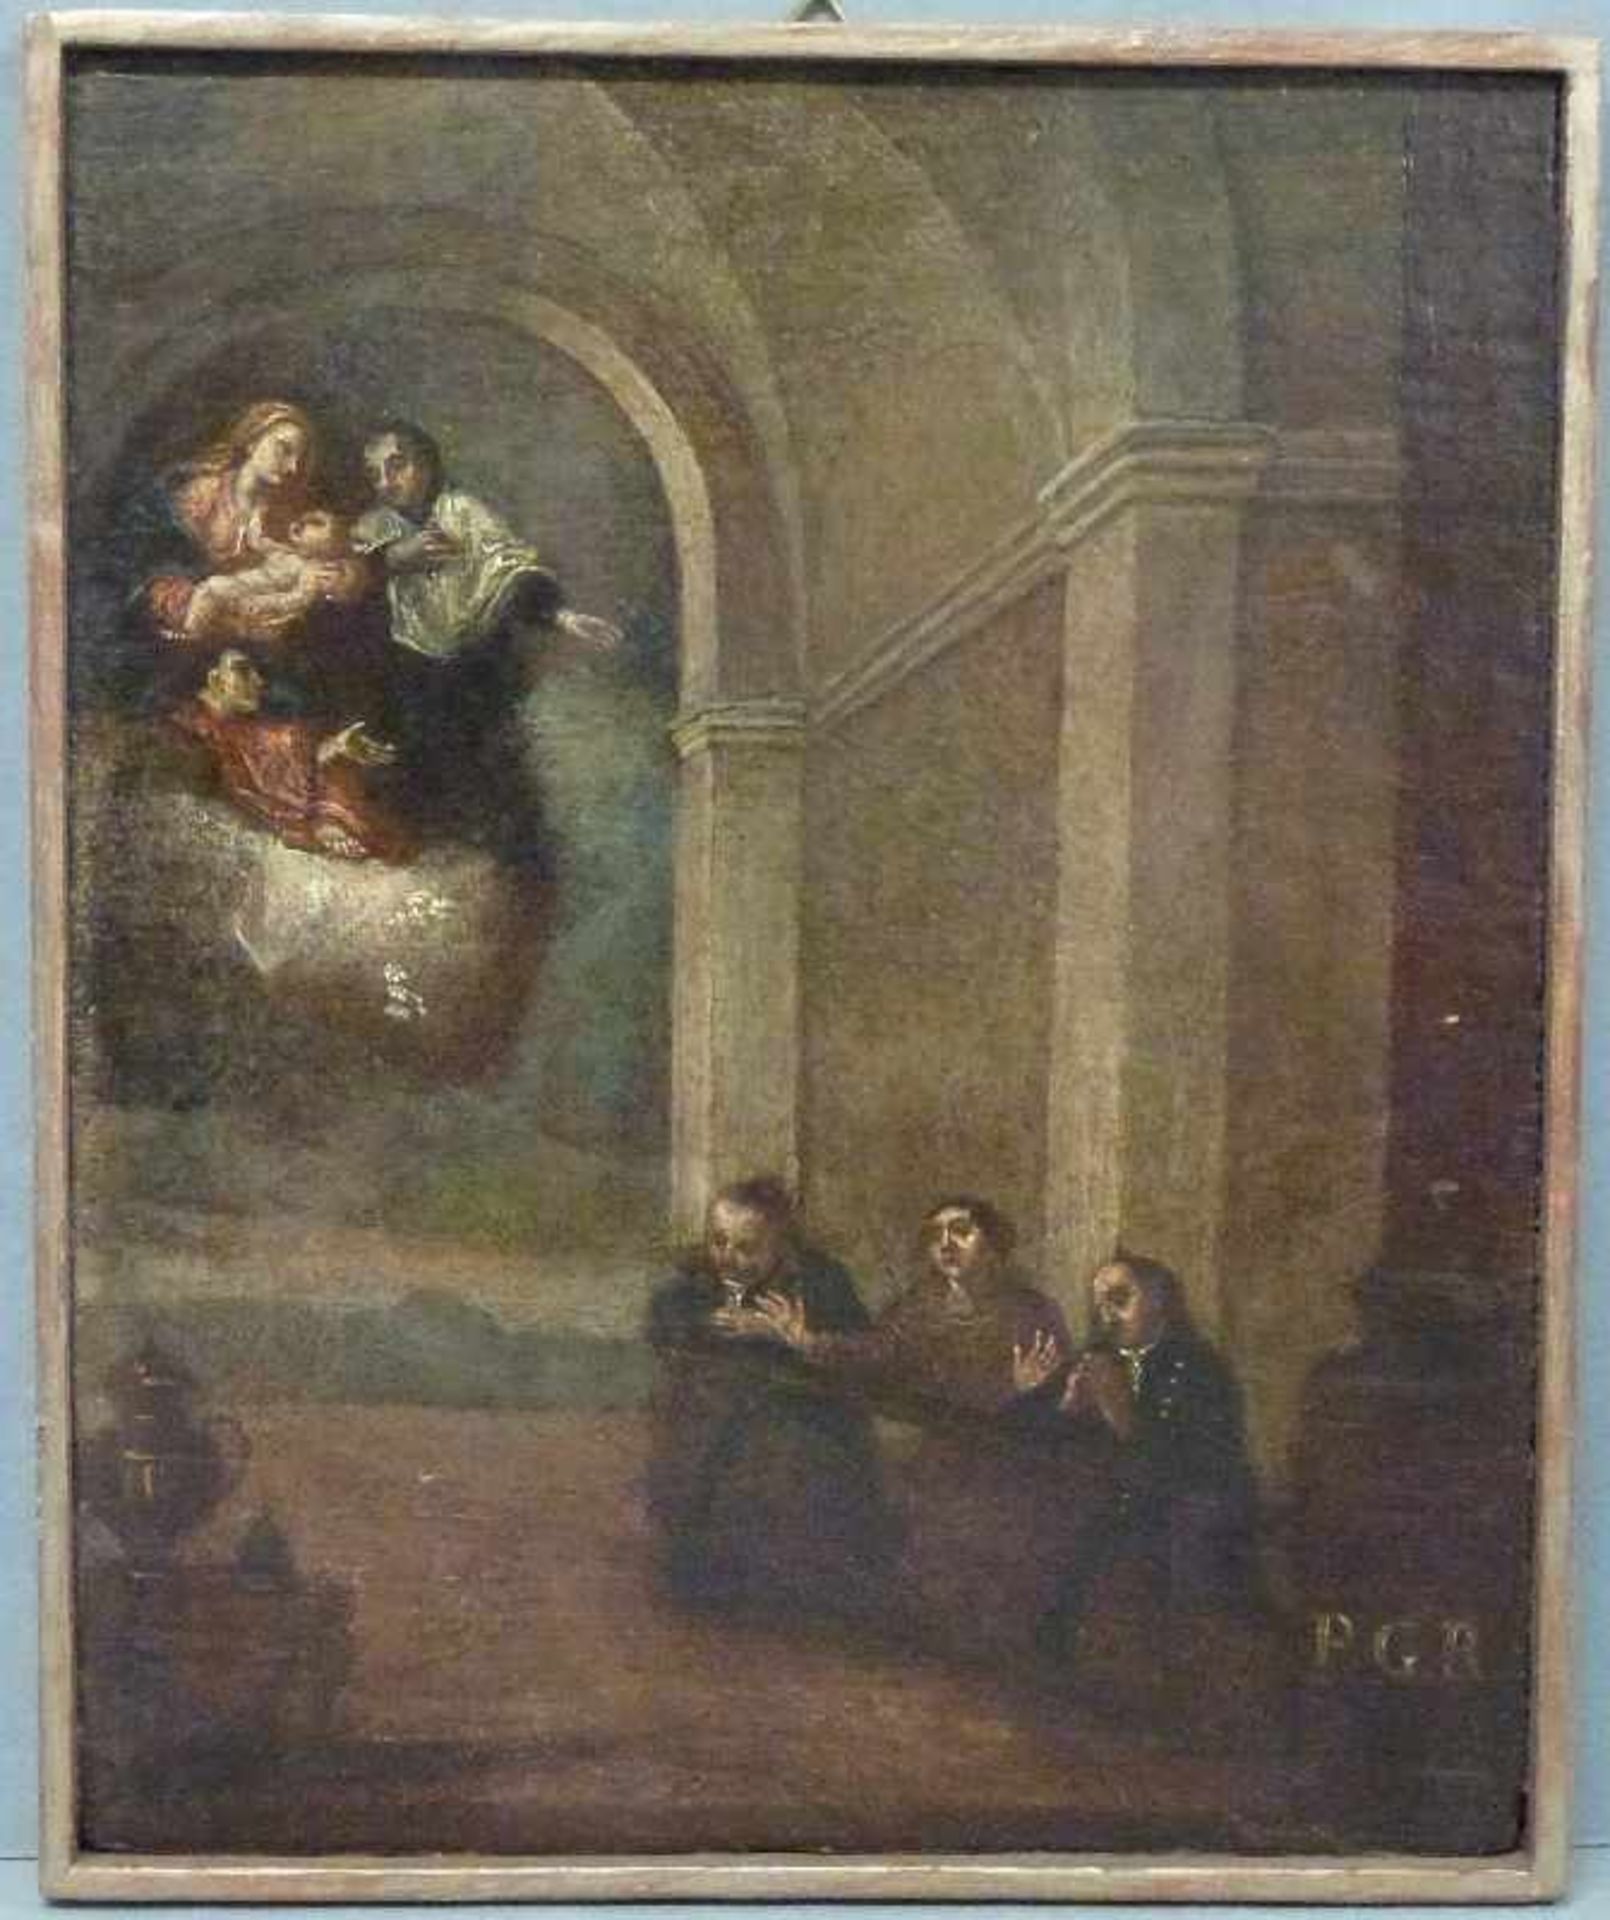 Votivbild, 19.Jh. Öl/Holz, in Kirche Betende und Flehende, Maria mit Jesuskind in Wolken, Monogr.: - Bild 2 aus 2